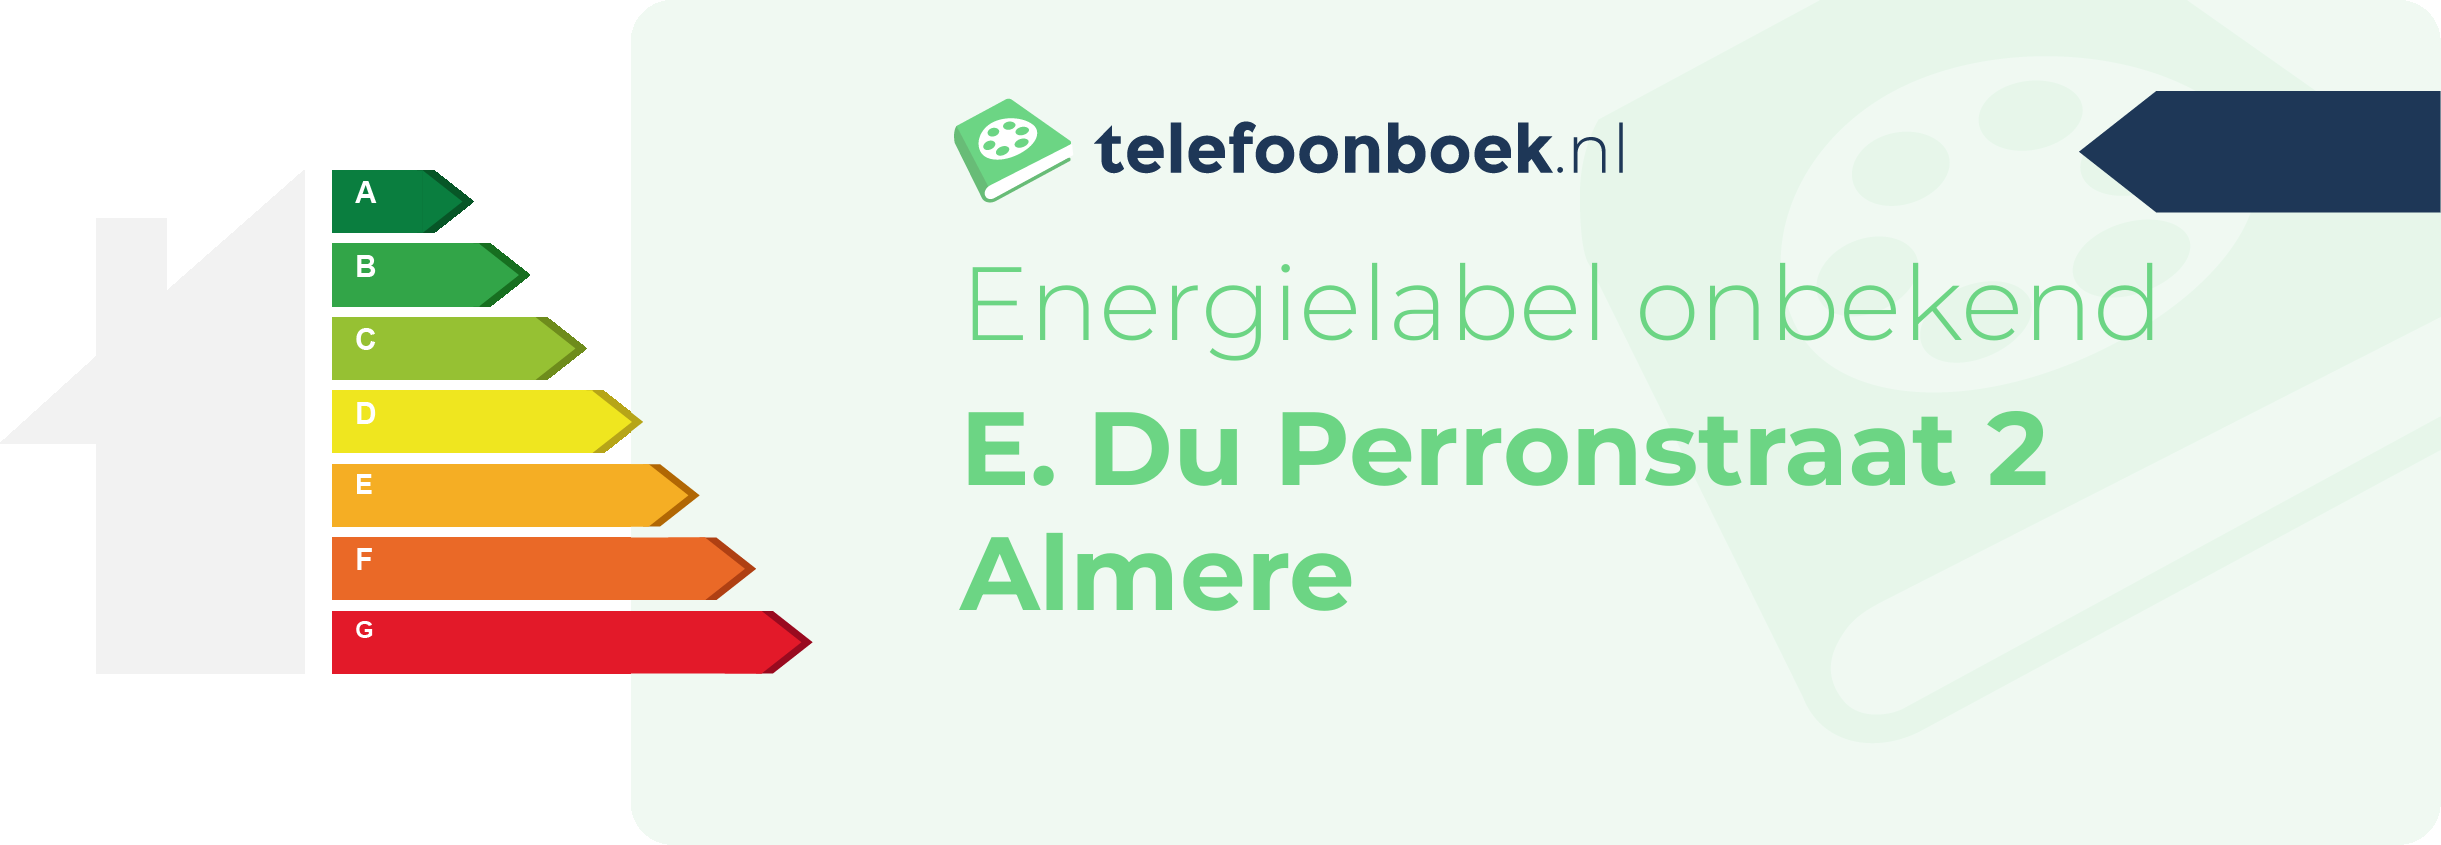 Energielabel E. Du Perronstraat 2 Almere